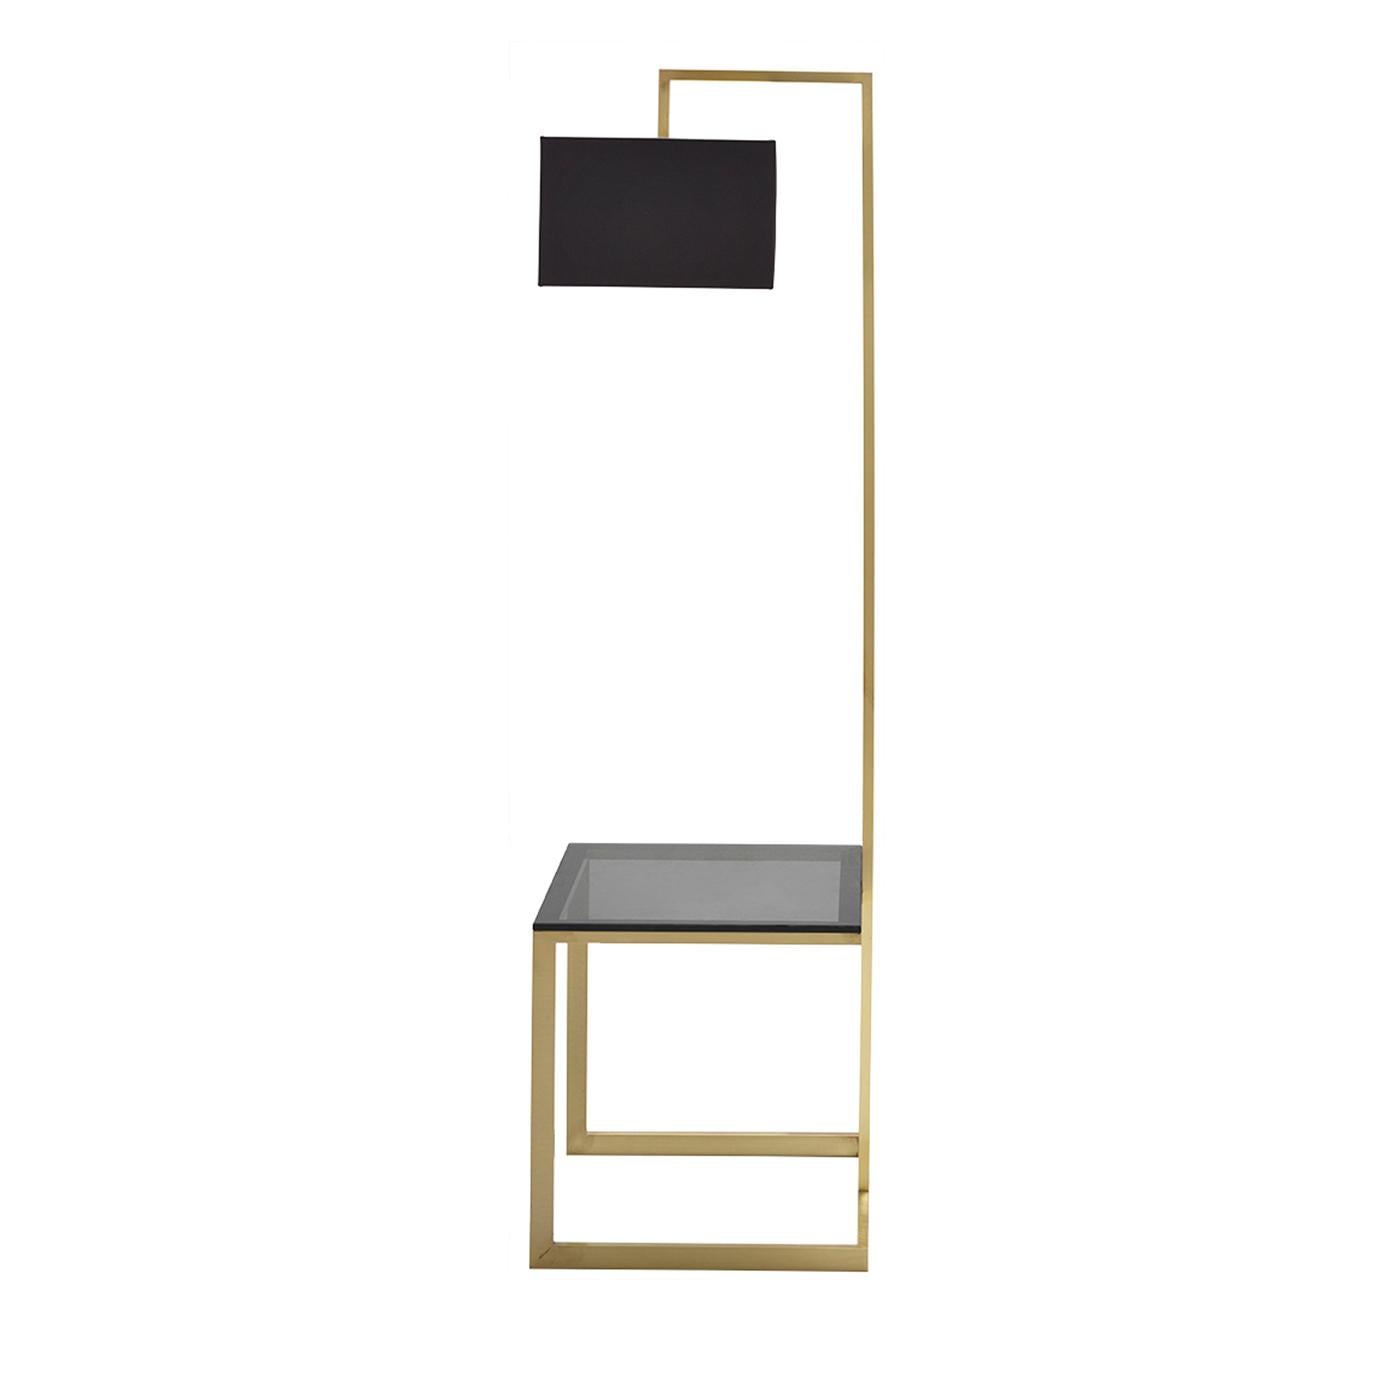 Die Stehleuchte Arona ist Lichtquelle und Beistelltisch in einem und wurde für minimalistische Wohnräume entworfen. Der Tisch steht auf einem Sockel aus brüniertem Messing und hat eine Platte aus rauchfarbenem Glas, die für einen eleganten Effekt